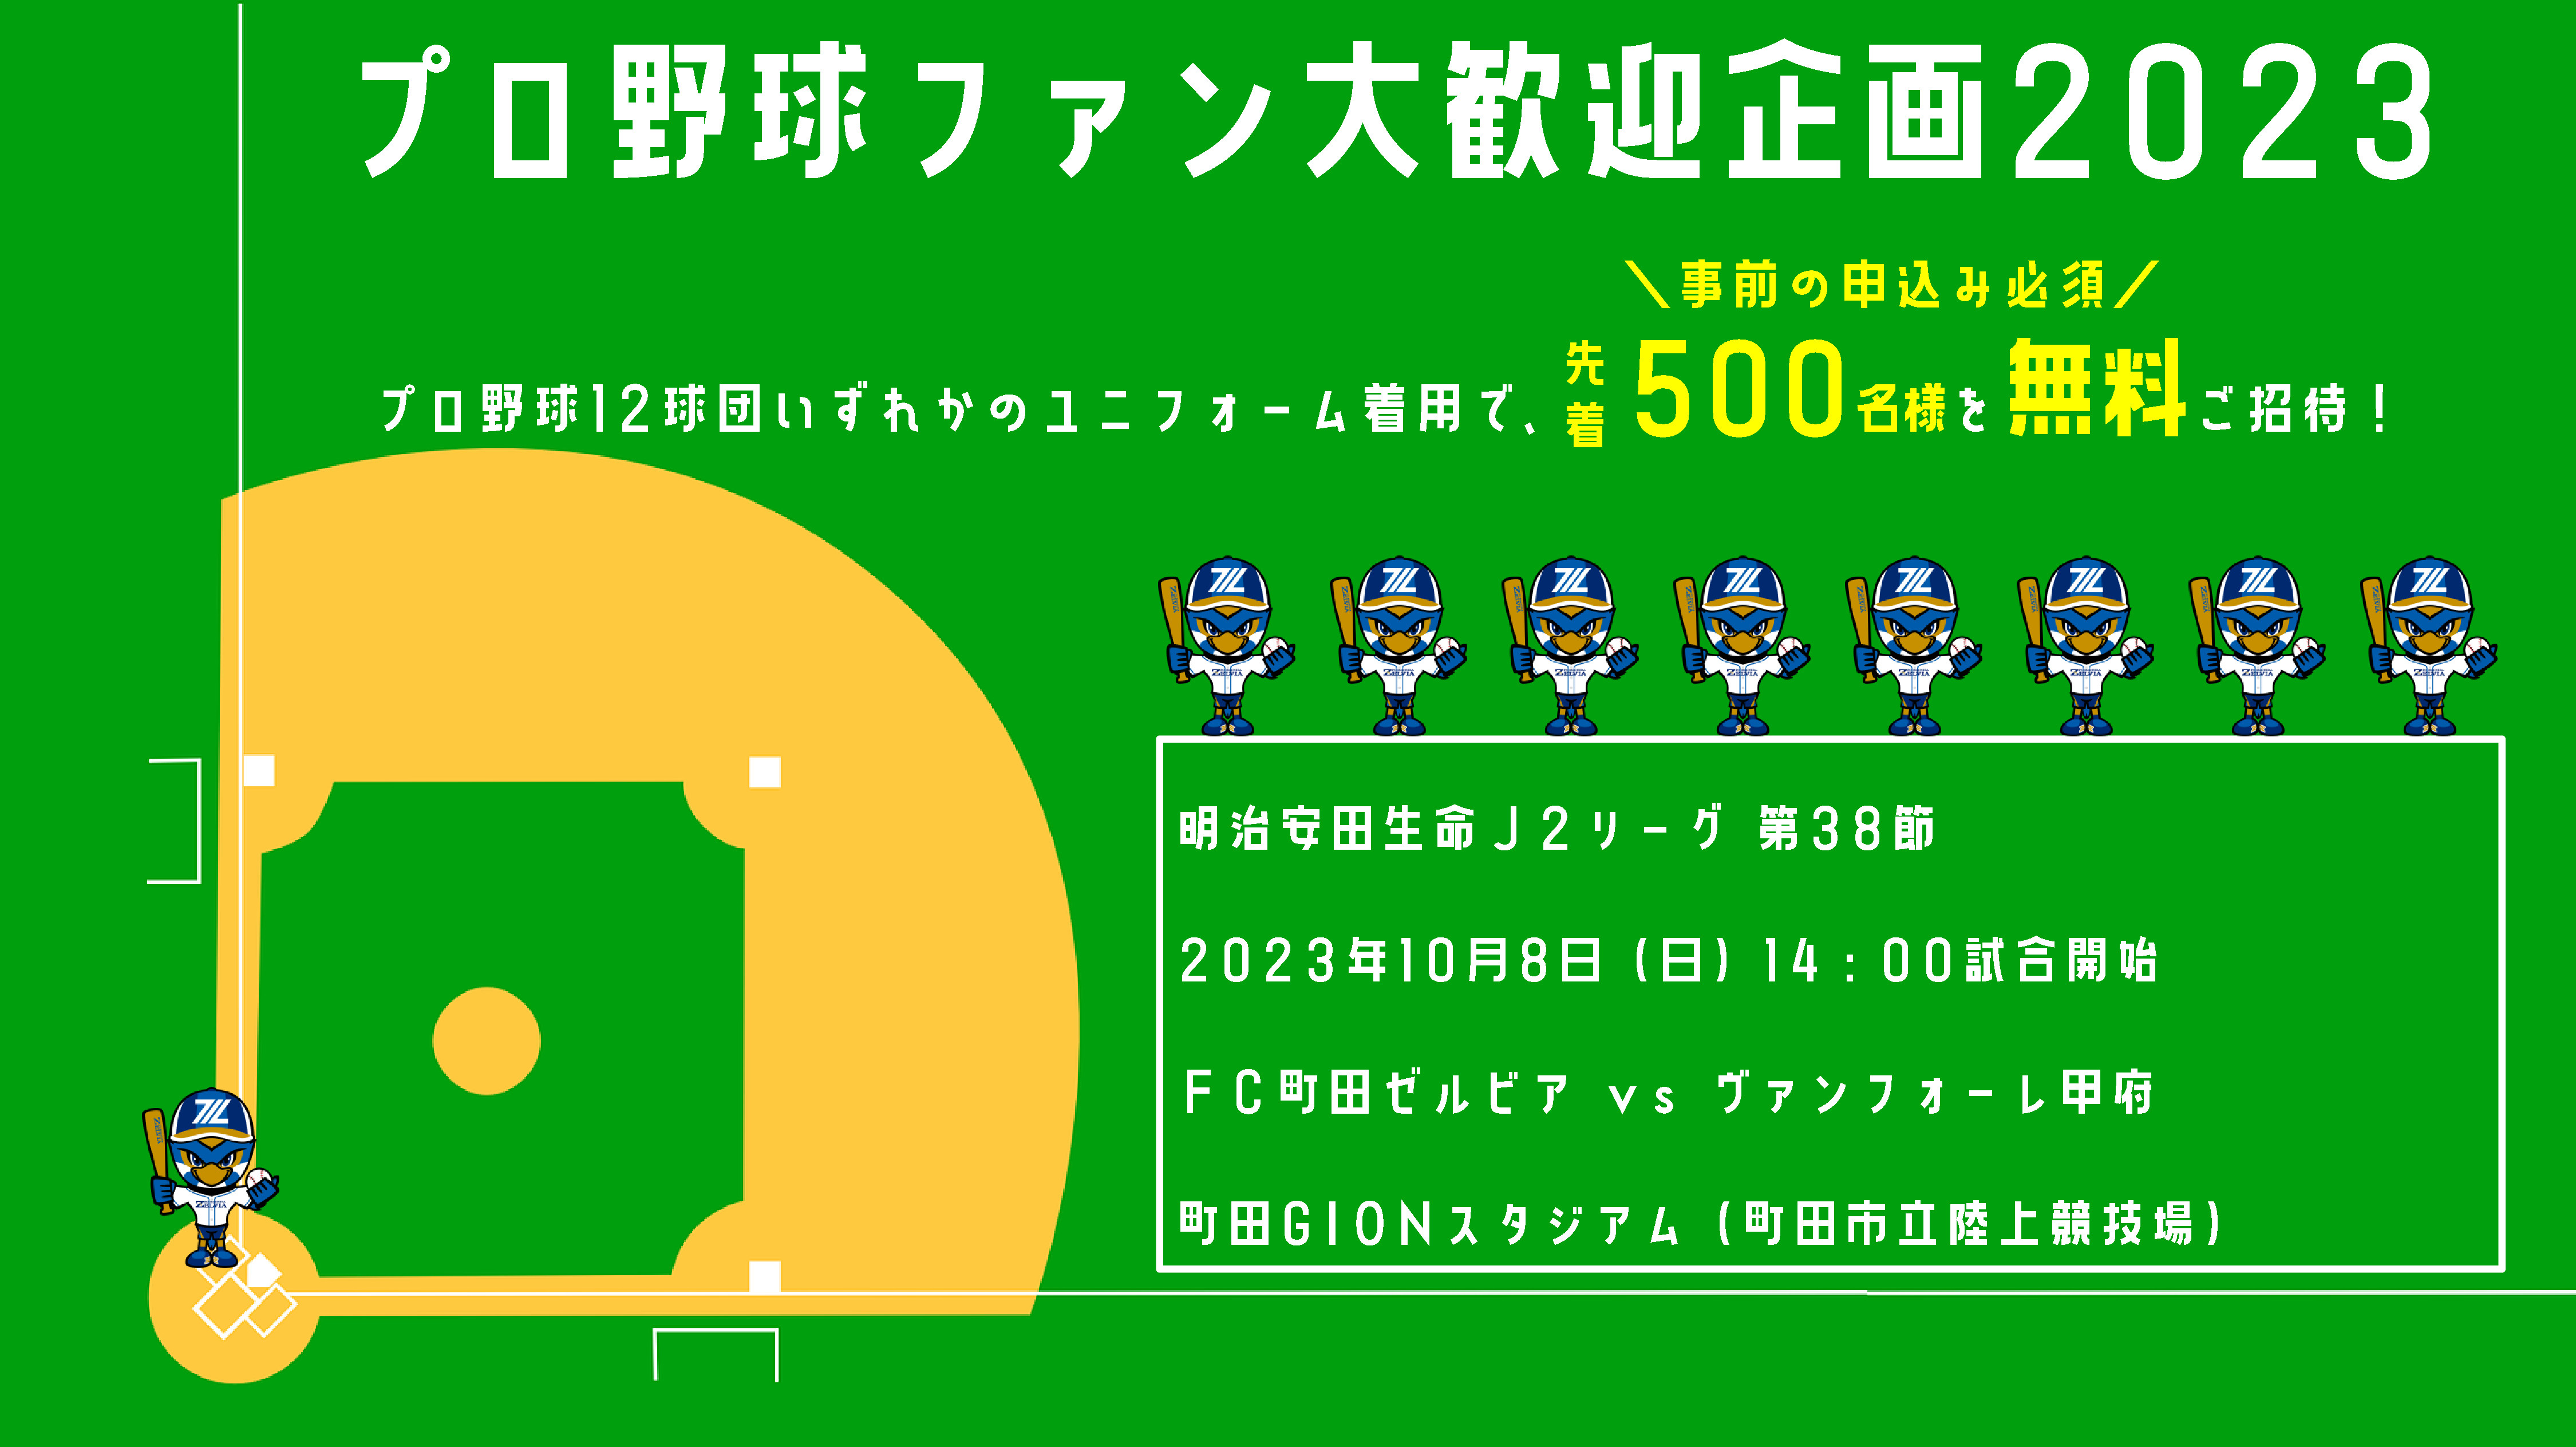 プロ野球ファン大歓迎企画2023 | FC町田ゼルビア オフィシャルサイト